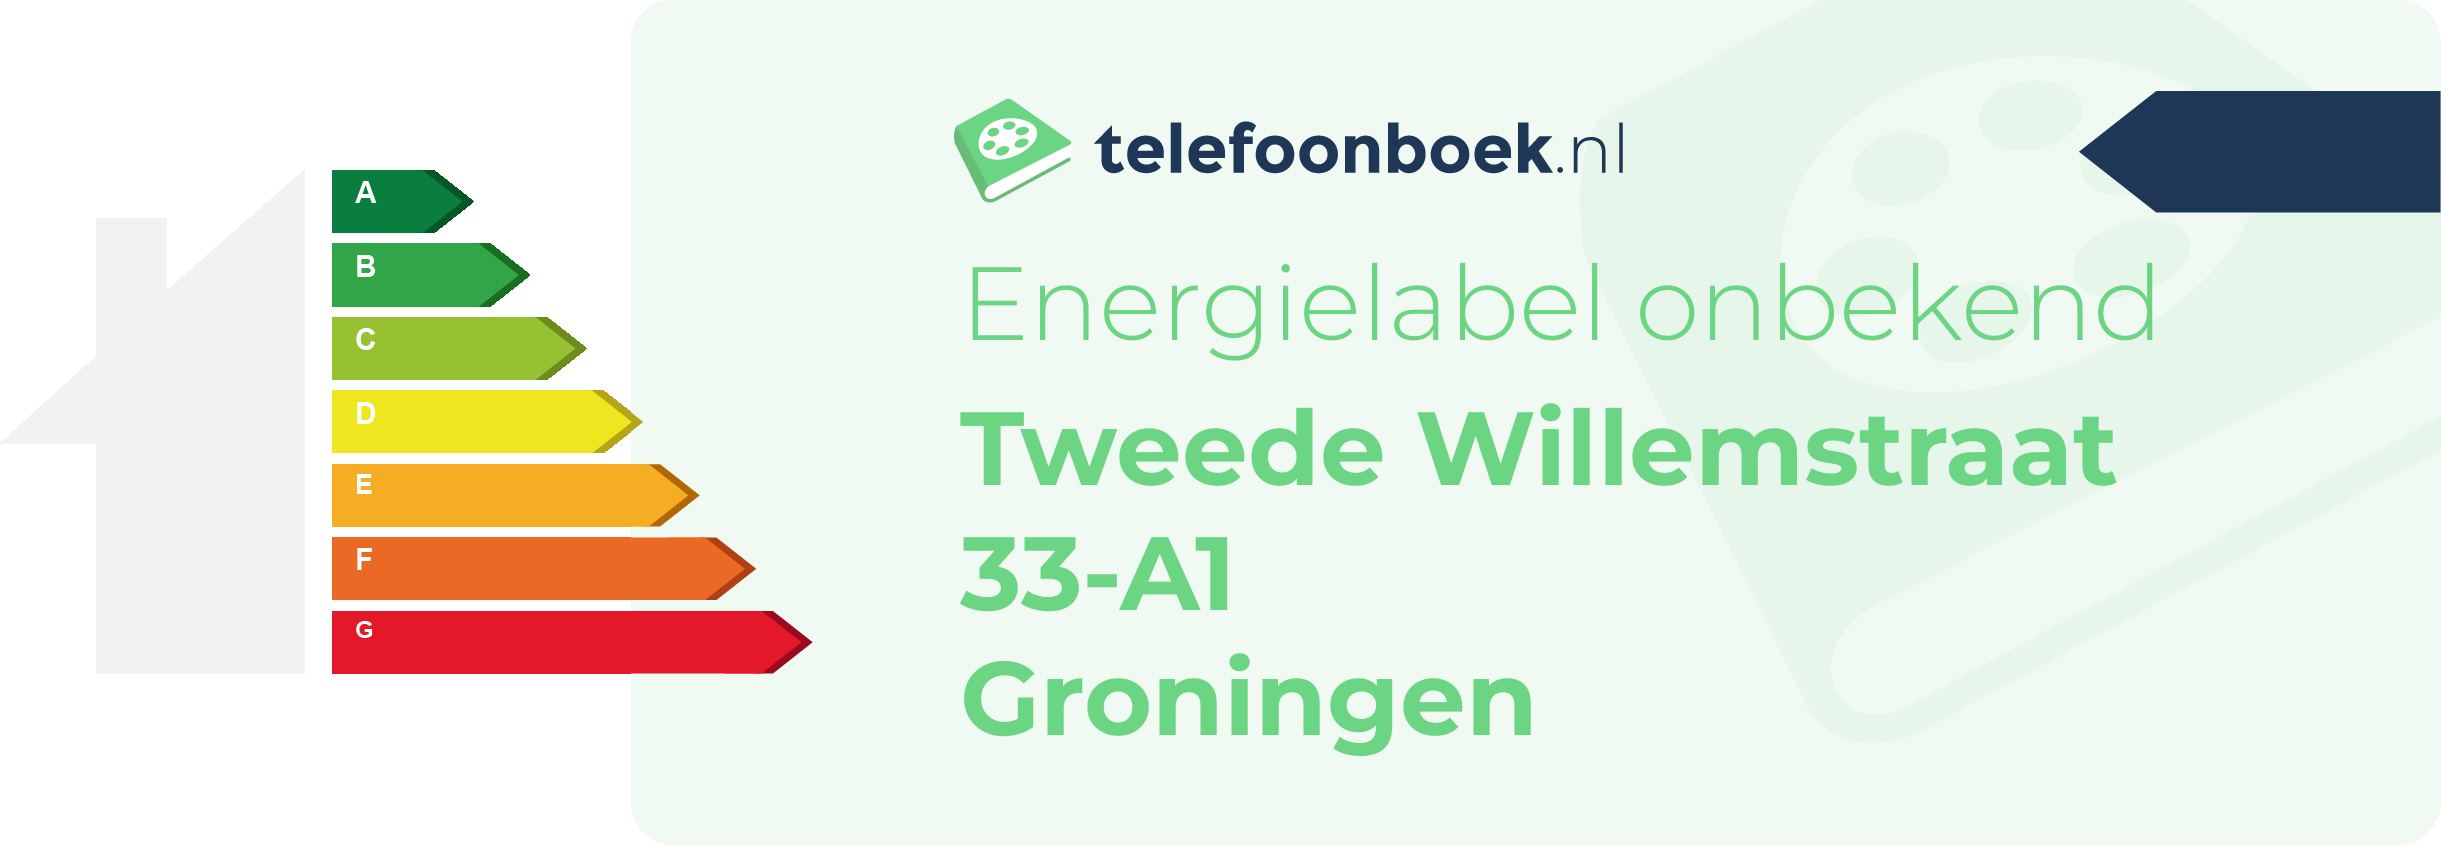 Energielabel Tweede Willemstraat 33-A1 Groningen